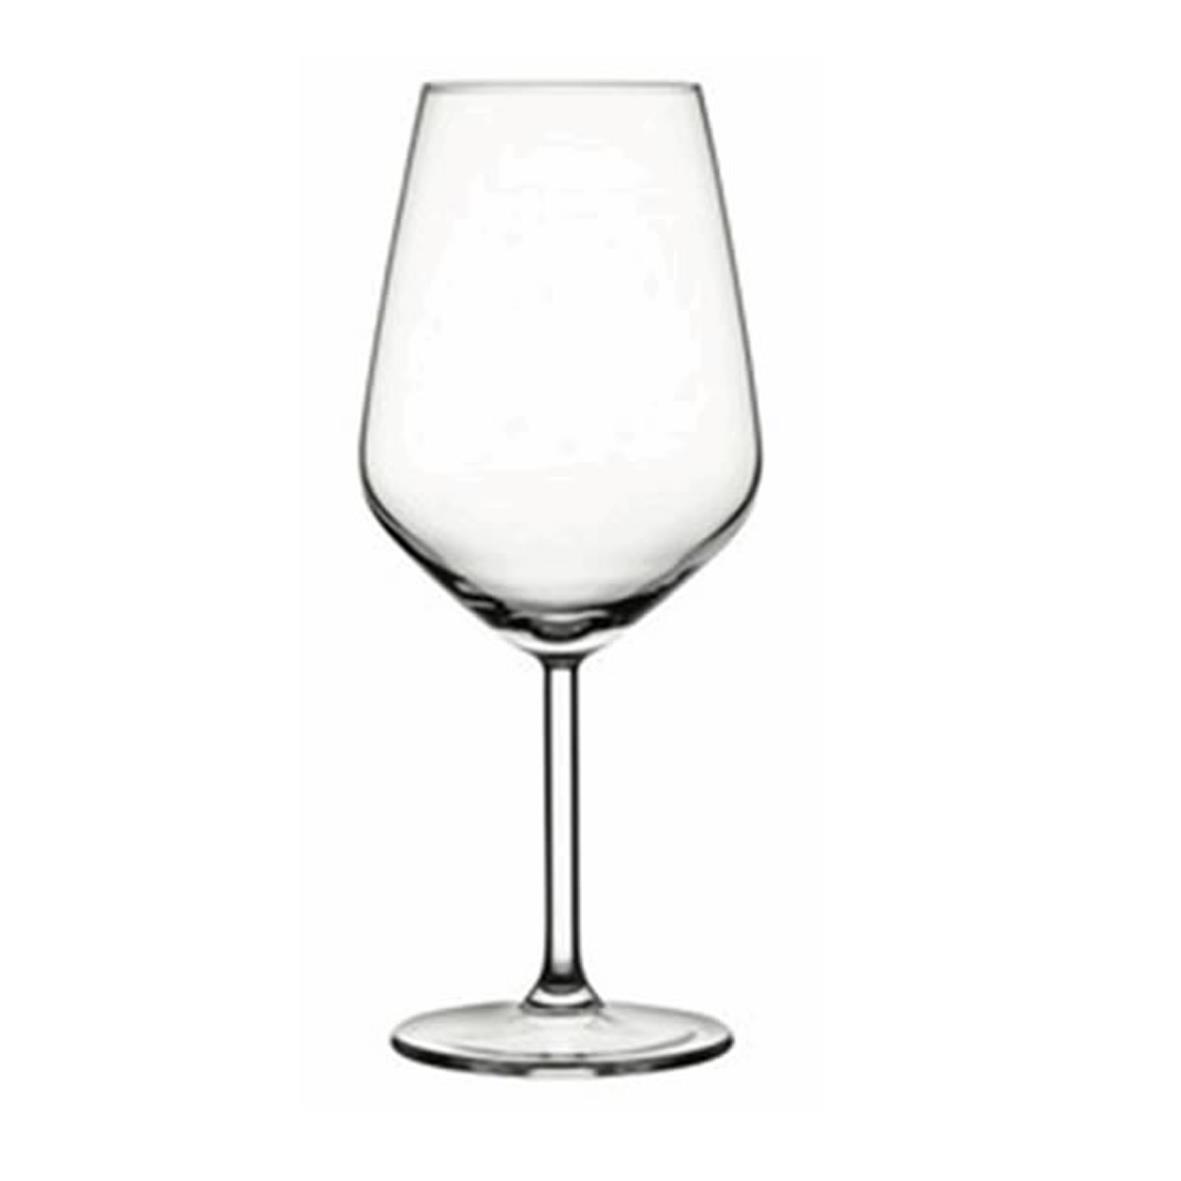 Allegra Wijnglas 49 cl. bedrukken